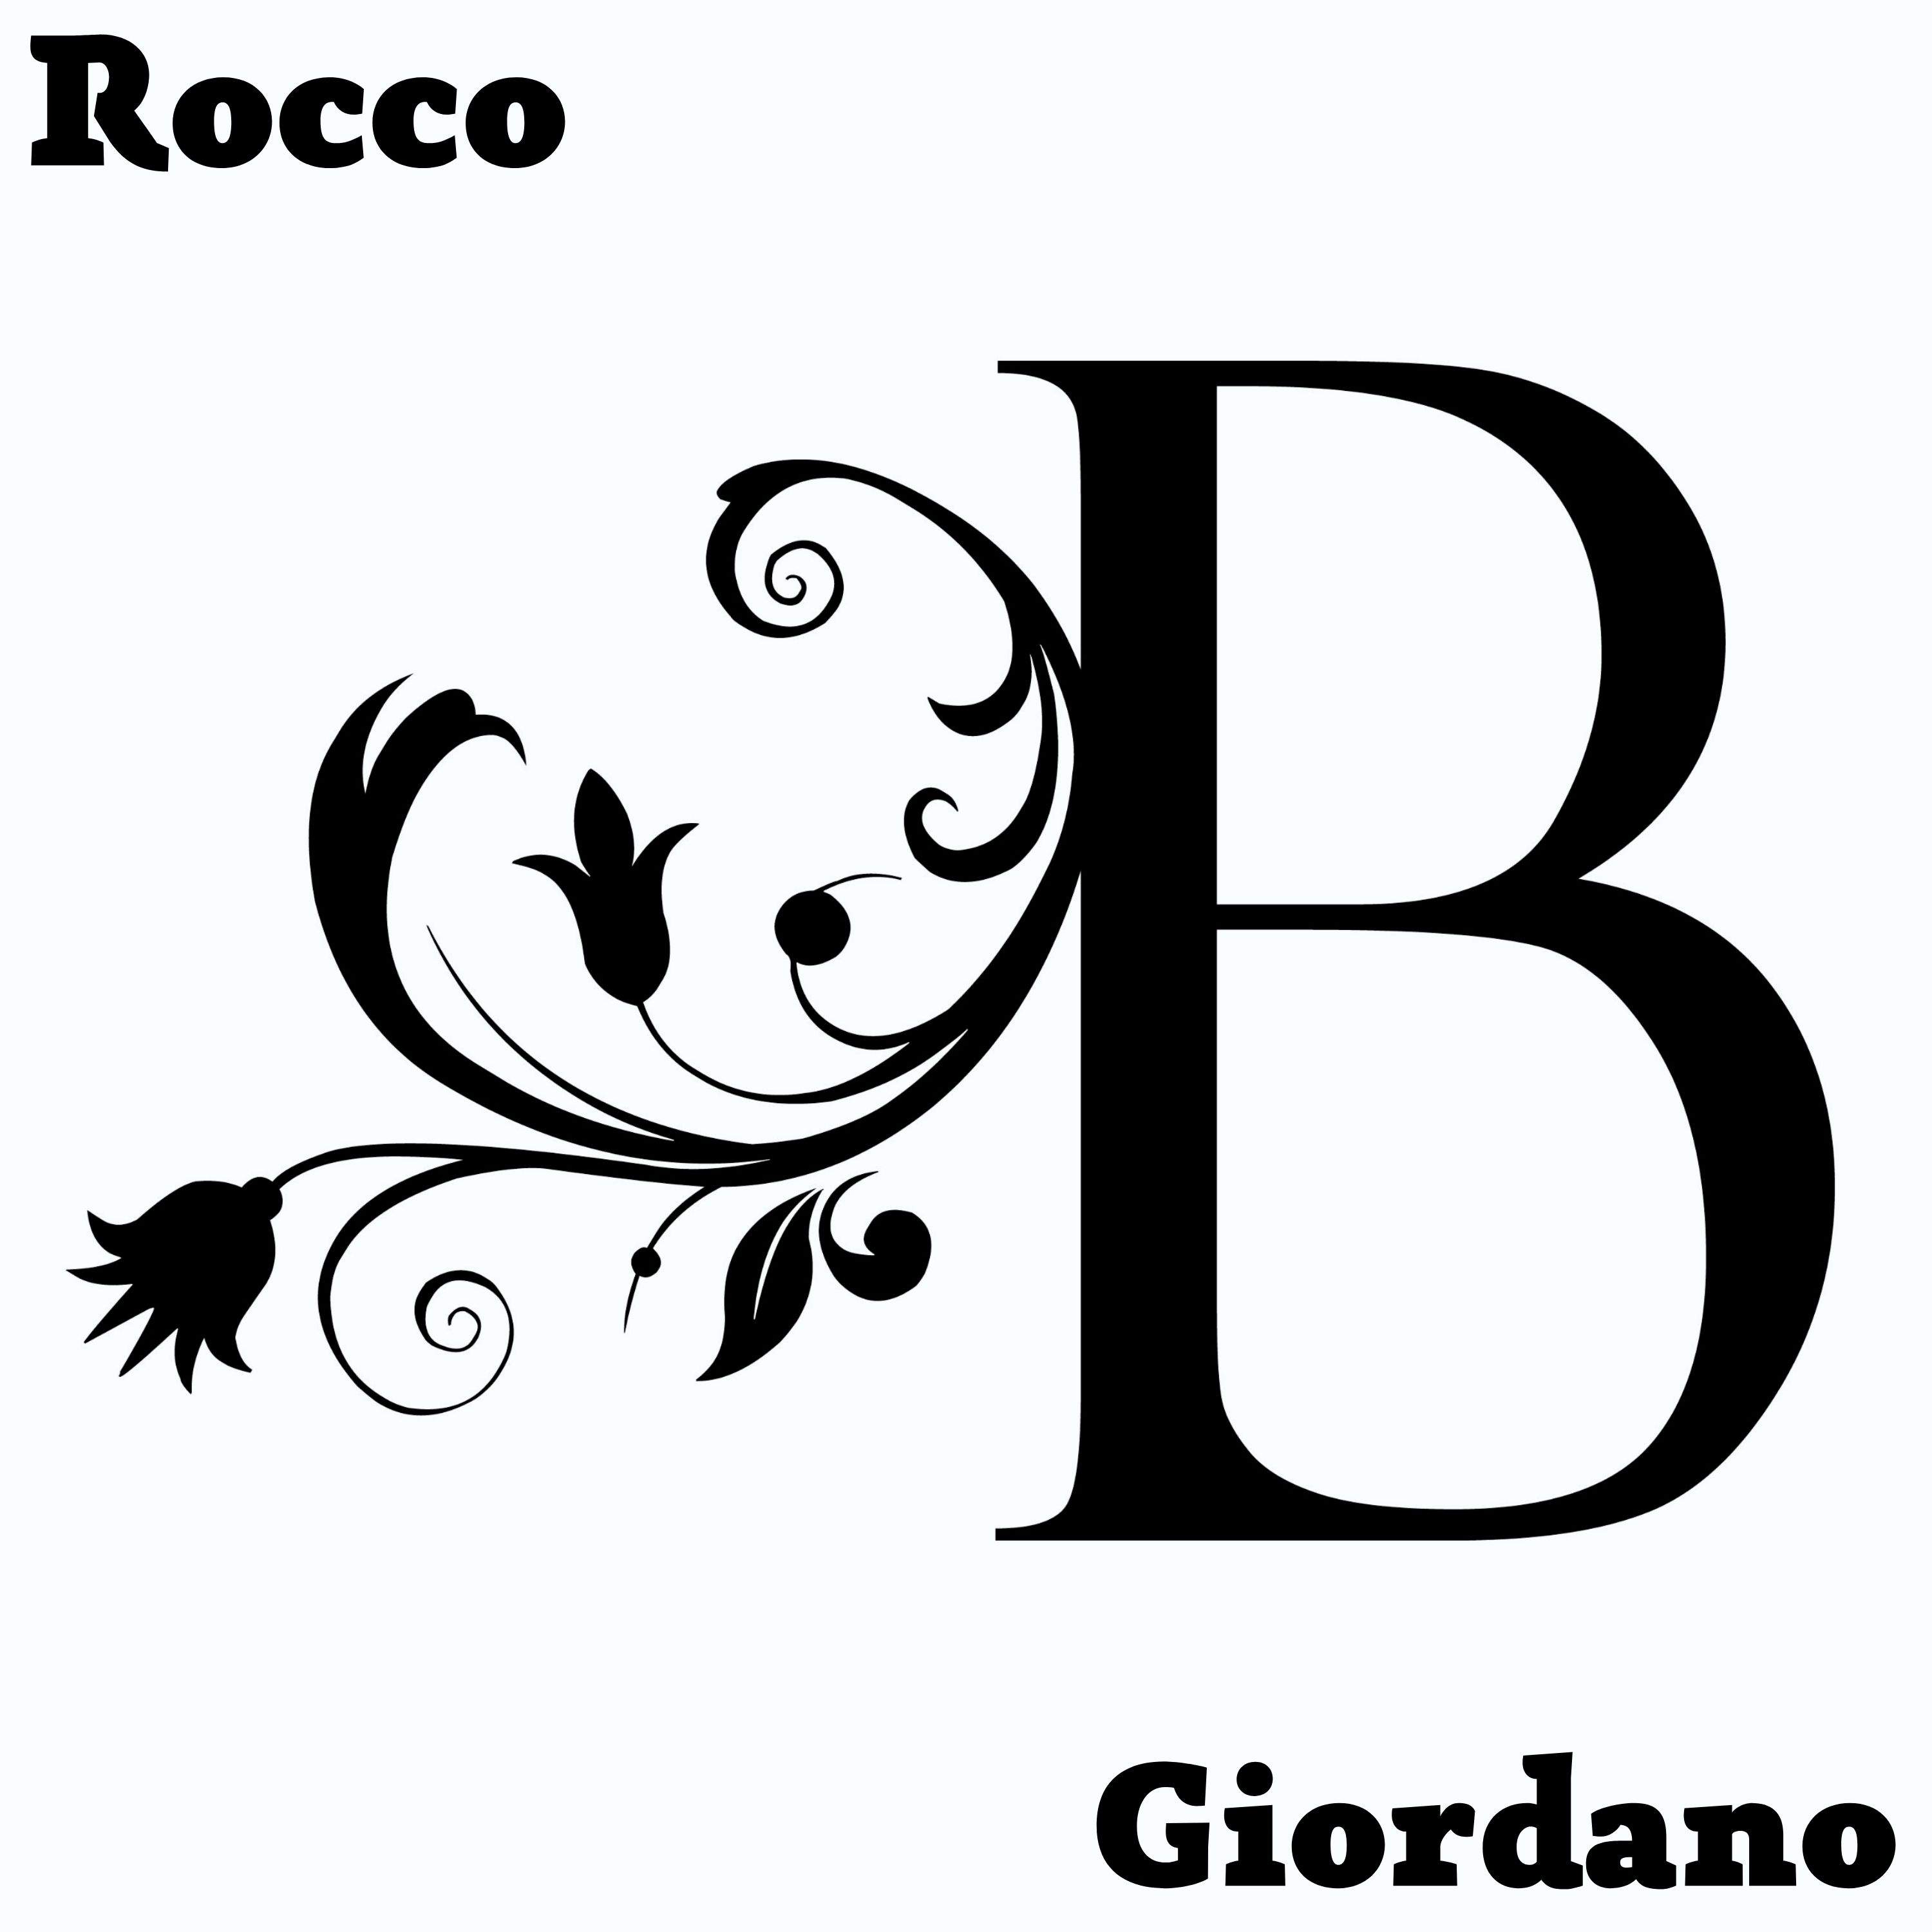 B è il nuovo brano di Rocco Giordano